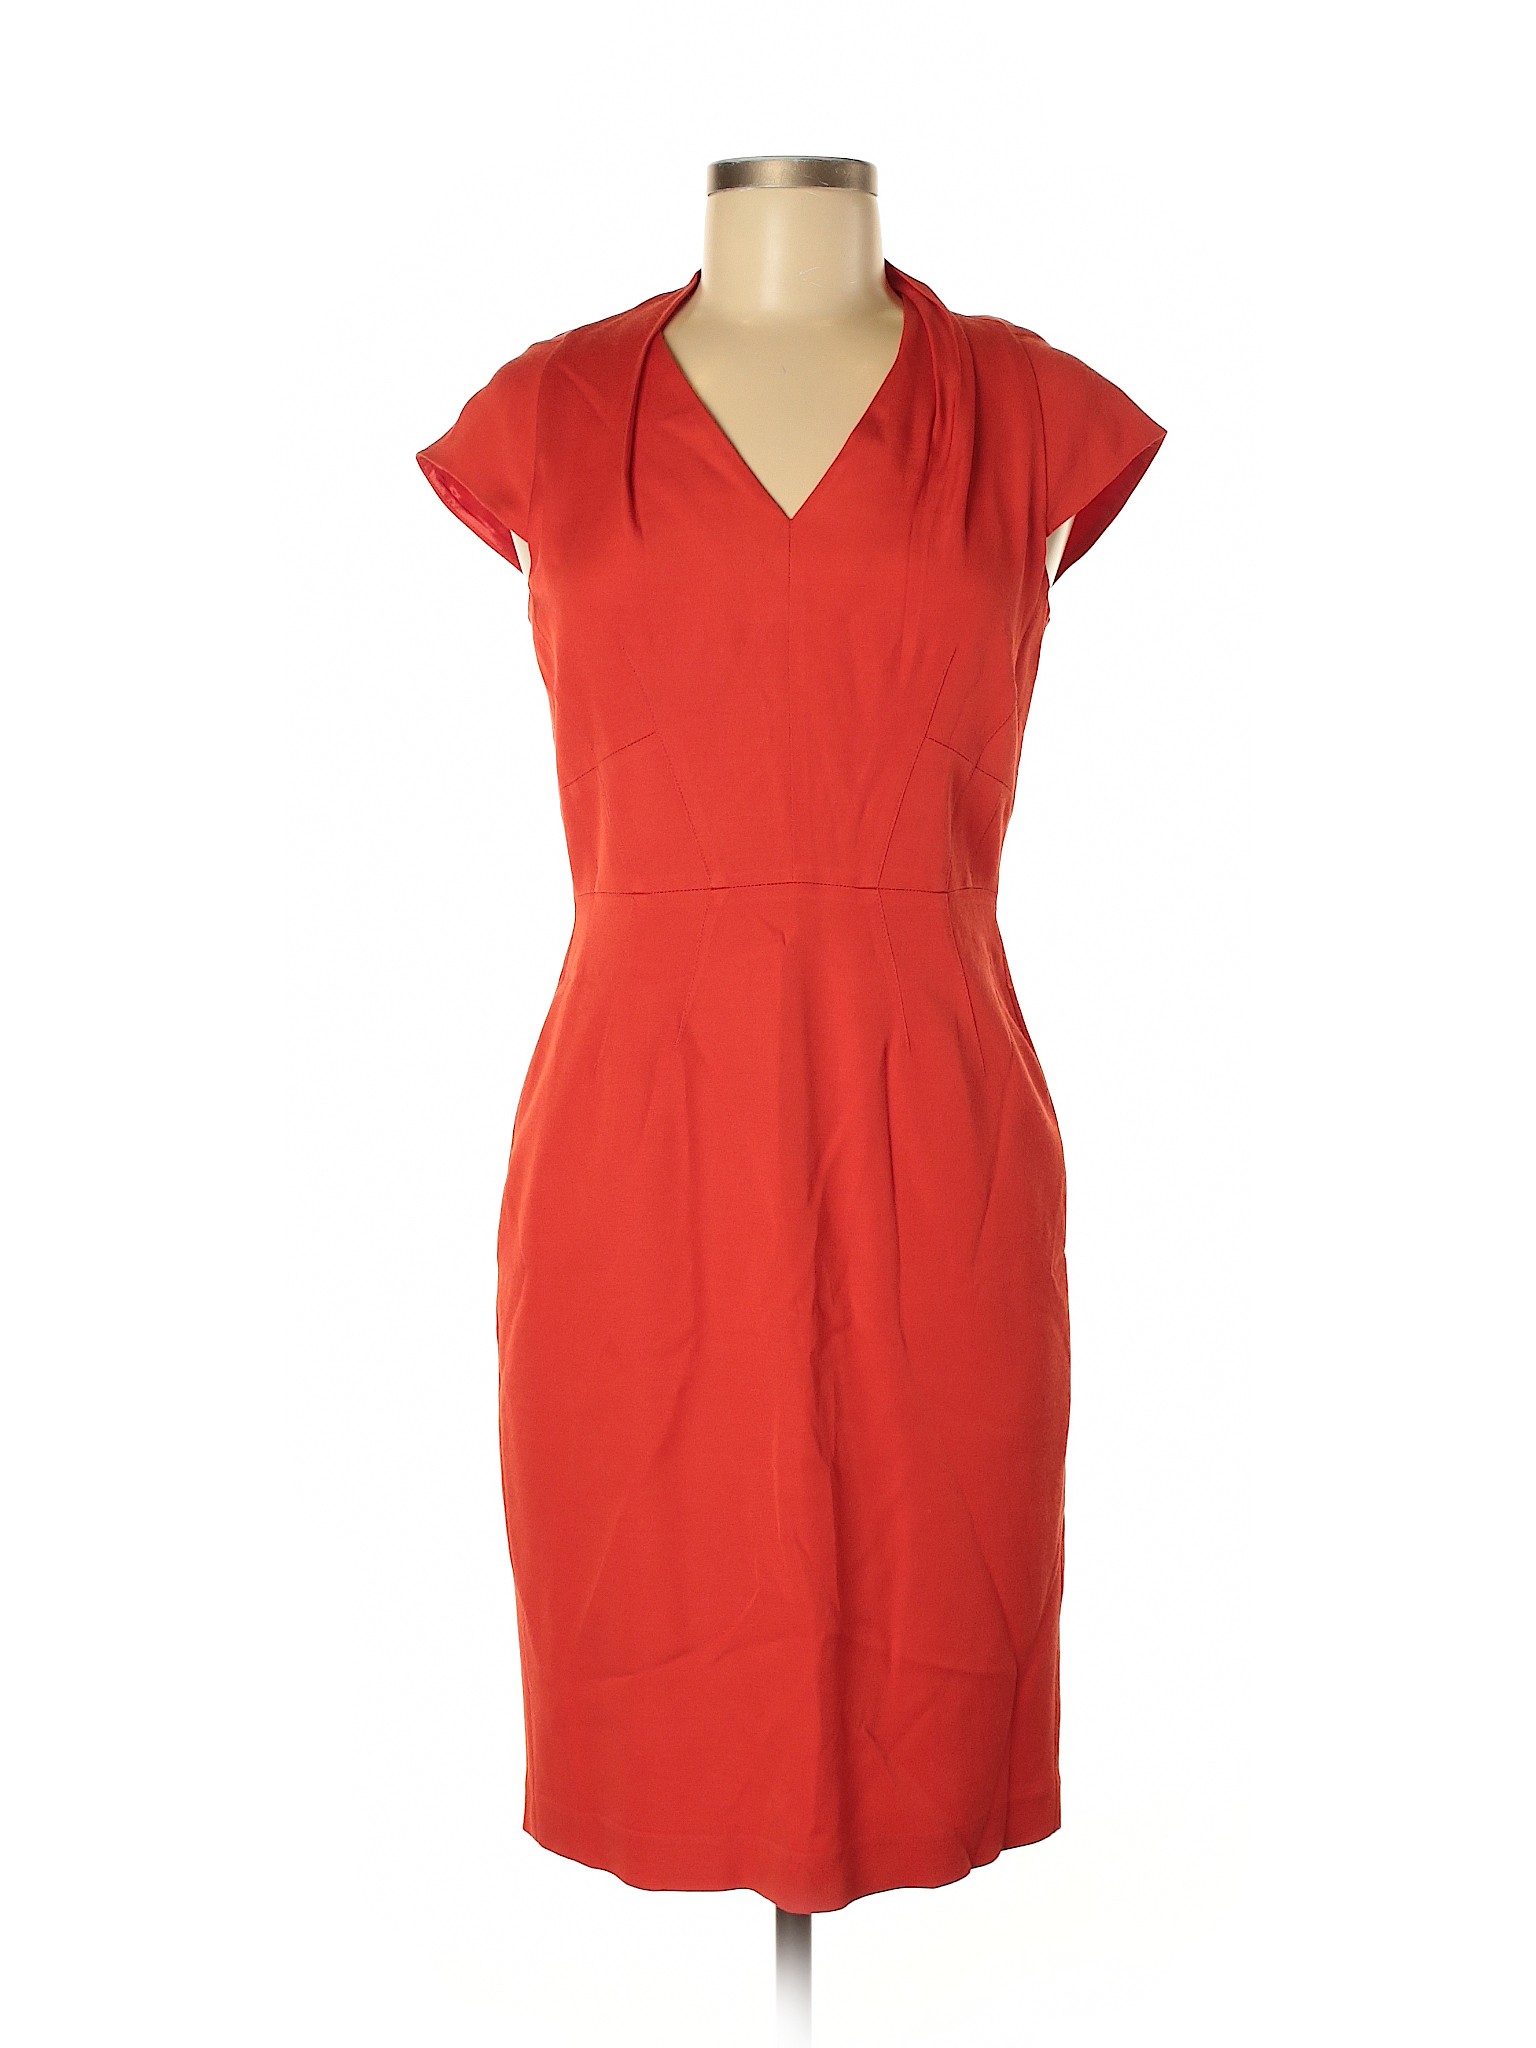 Reiss Women Orange Casual Dress 6 | eBay